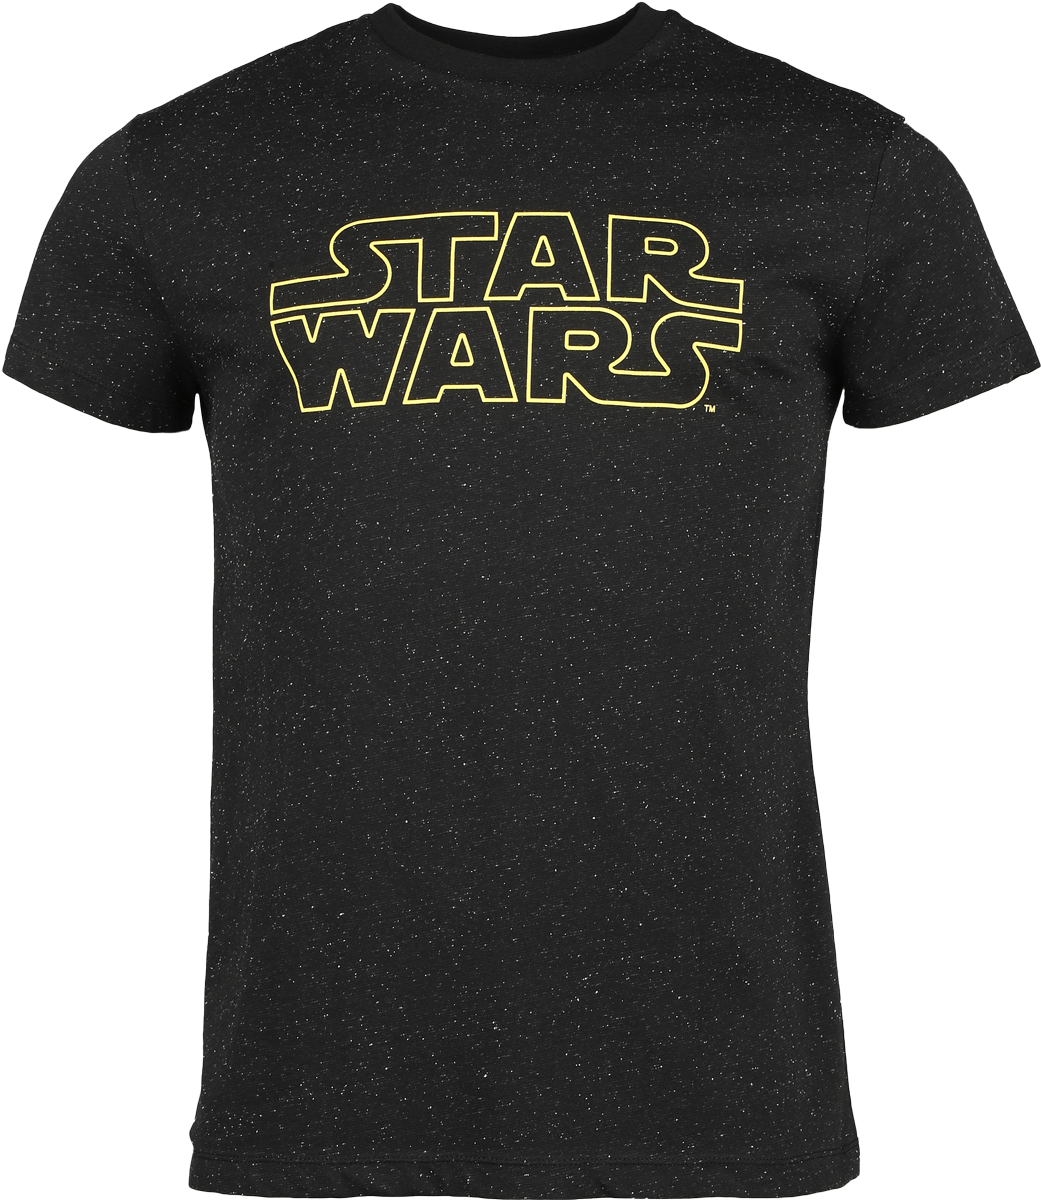 Star Wars - Star Wars - Galaxy - T-Shirt - schwarz - EMP Exklusiv!